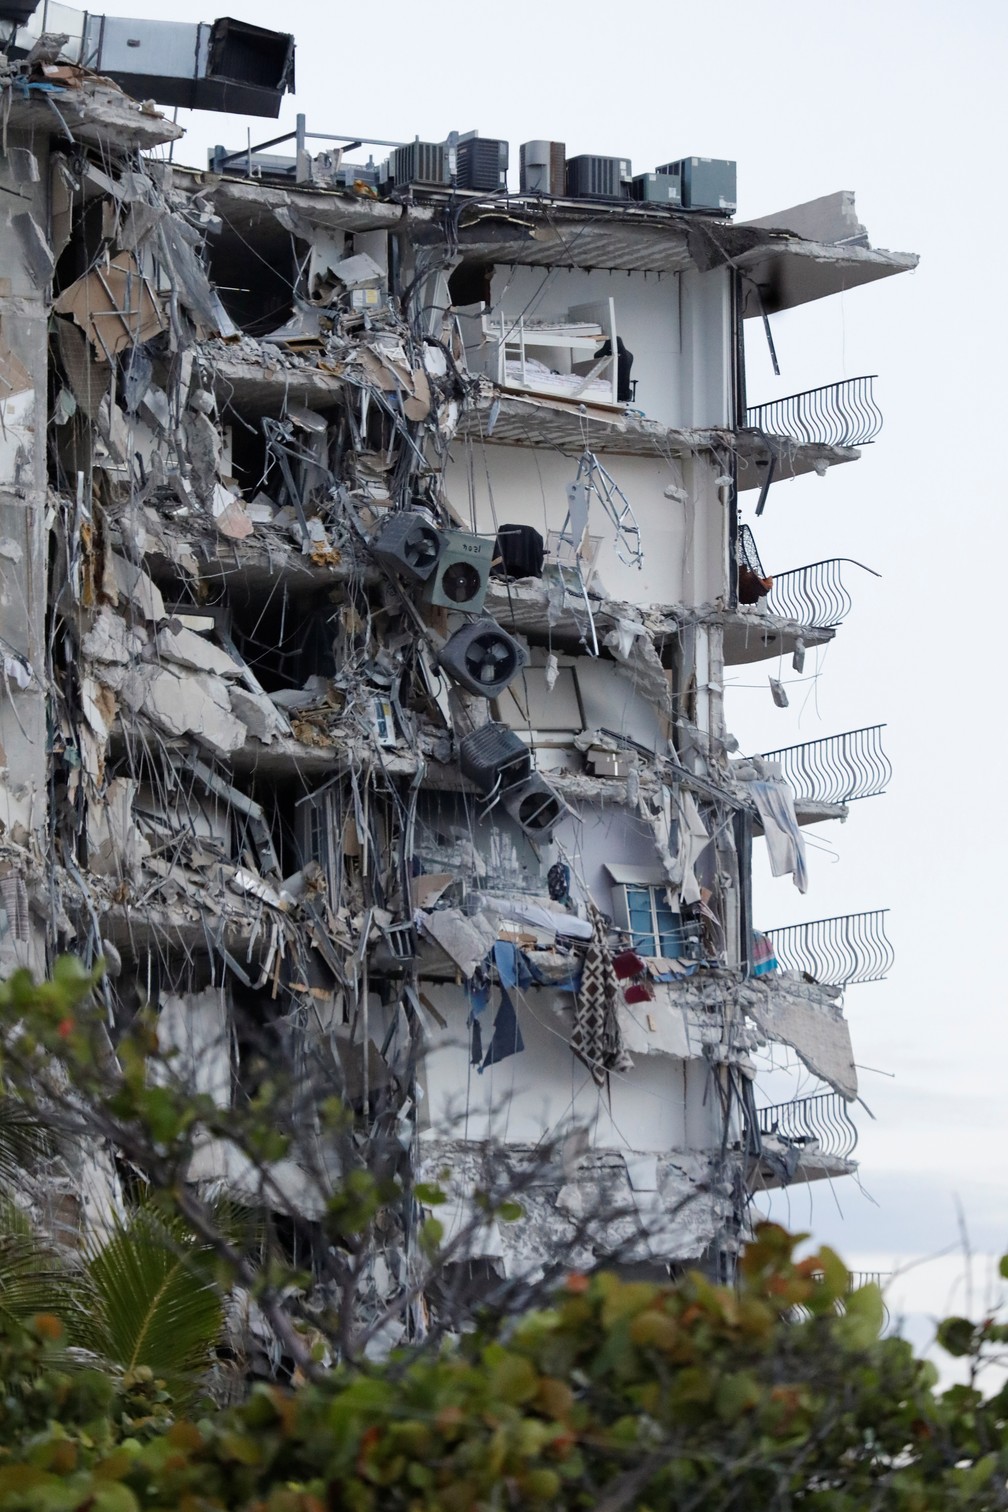 24 de junho - Destroços e pertences são vistos na lateral de um prédio residencial de 12 andares que desabou parcialmente em Miami Beach, na Flórida, EUA. Tragédia deixou dezenas de mortes e desaparecidos nos escombros — Foto: Marco Bello/Reuters